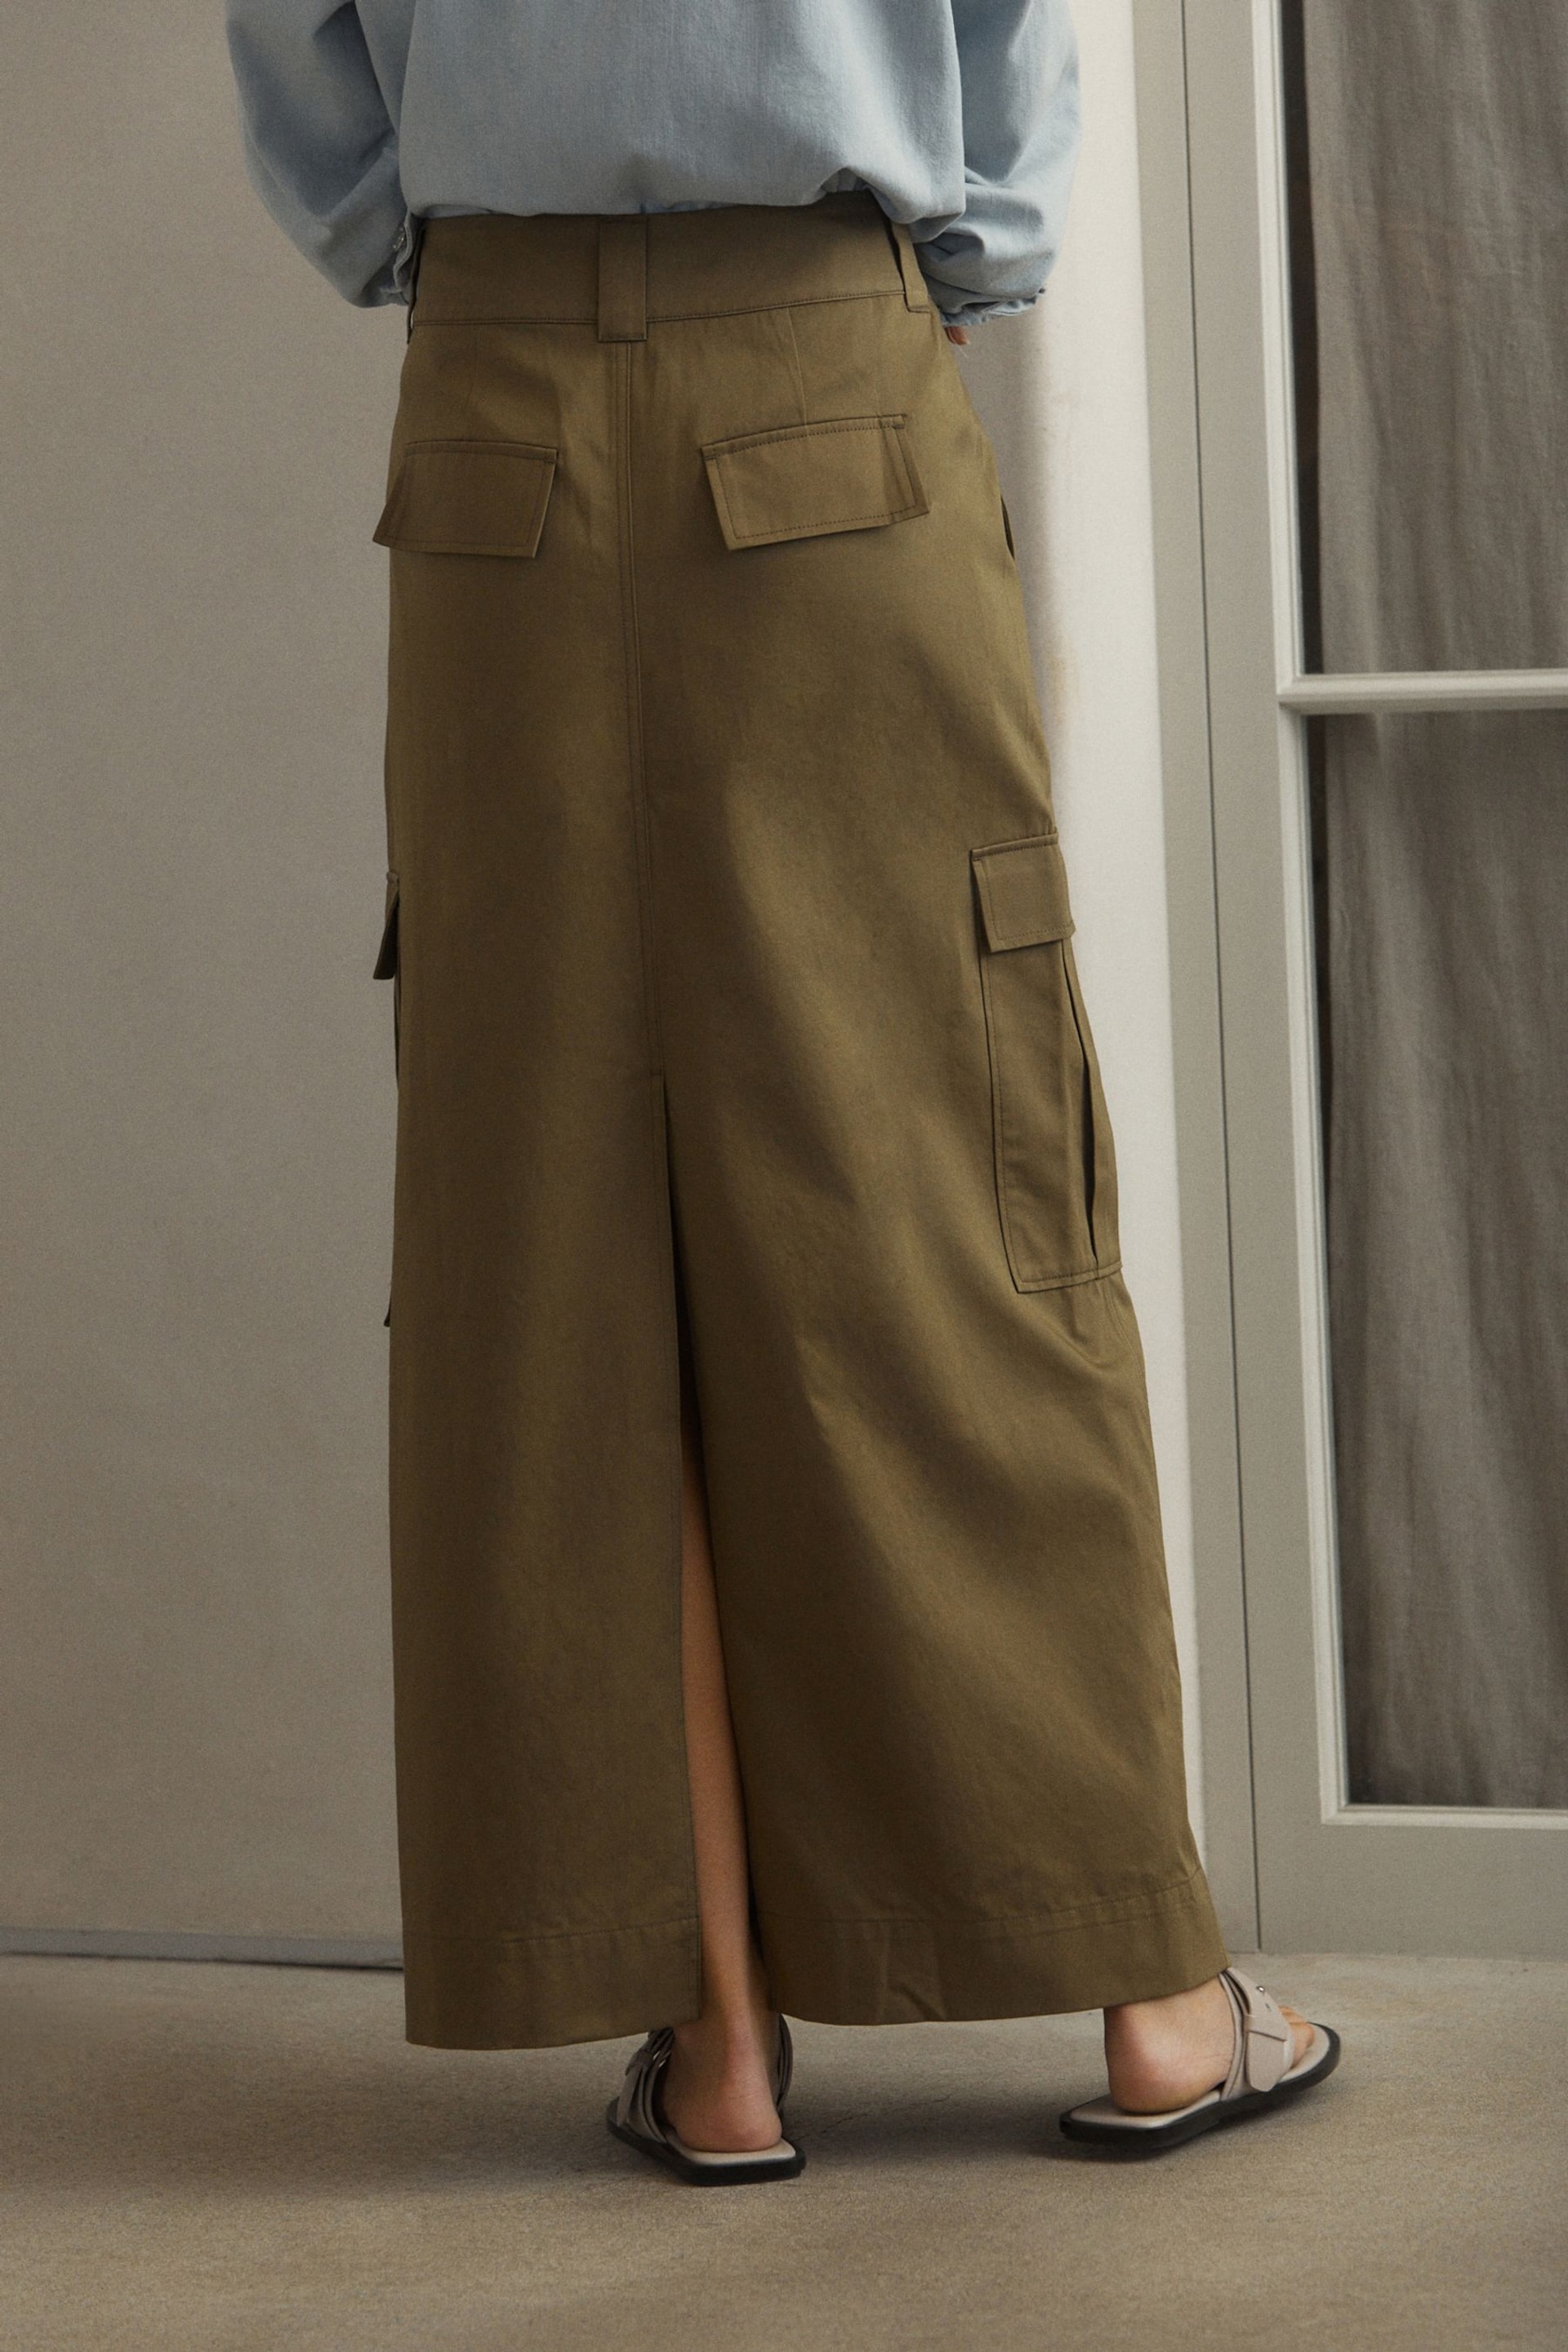 Khaki Green Utility Midi Skirt - Image 3 of 6